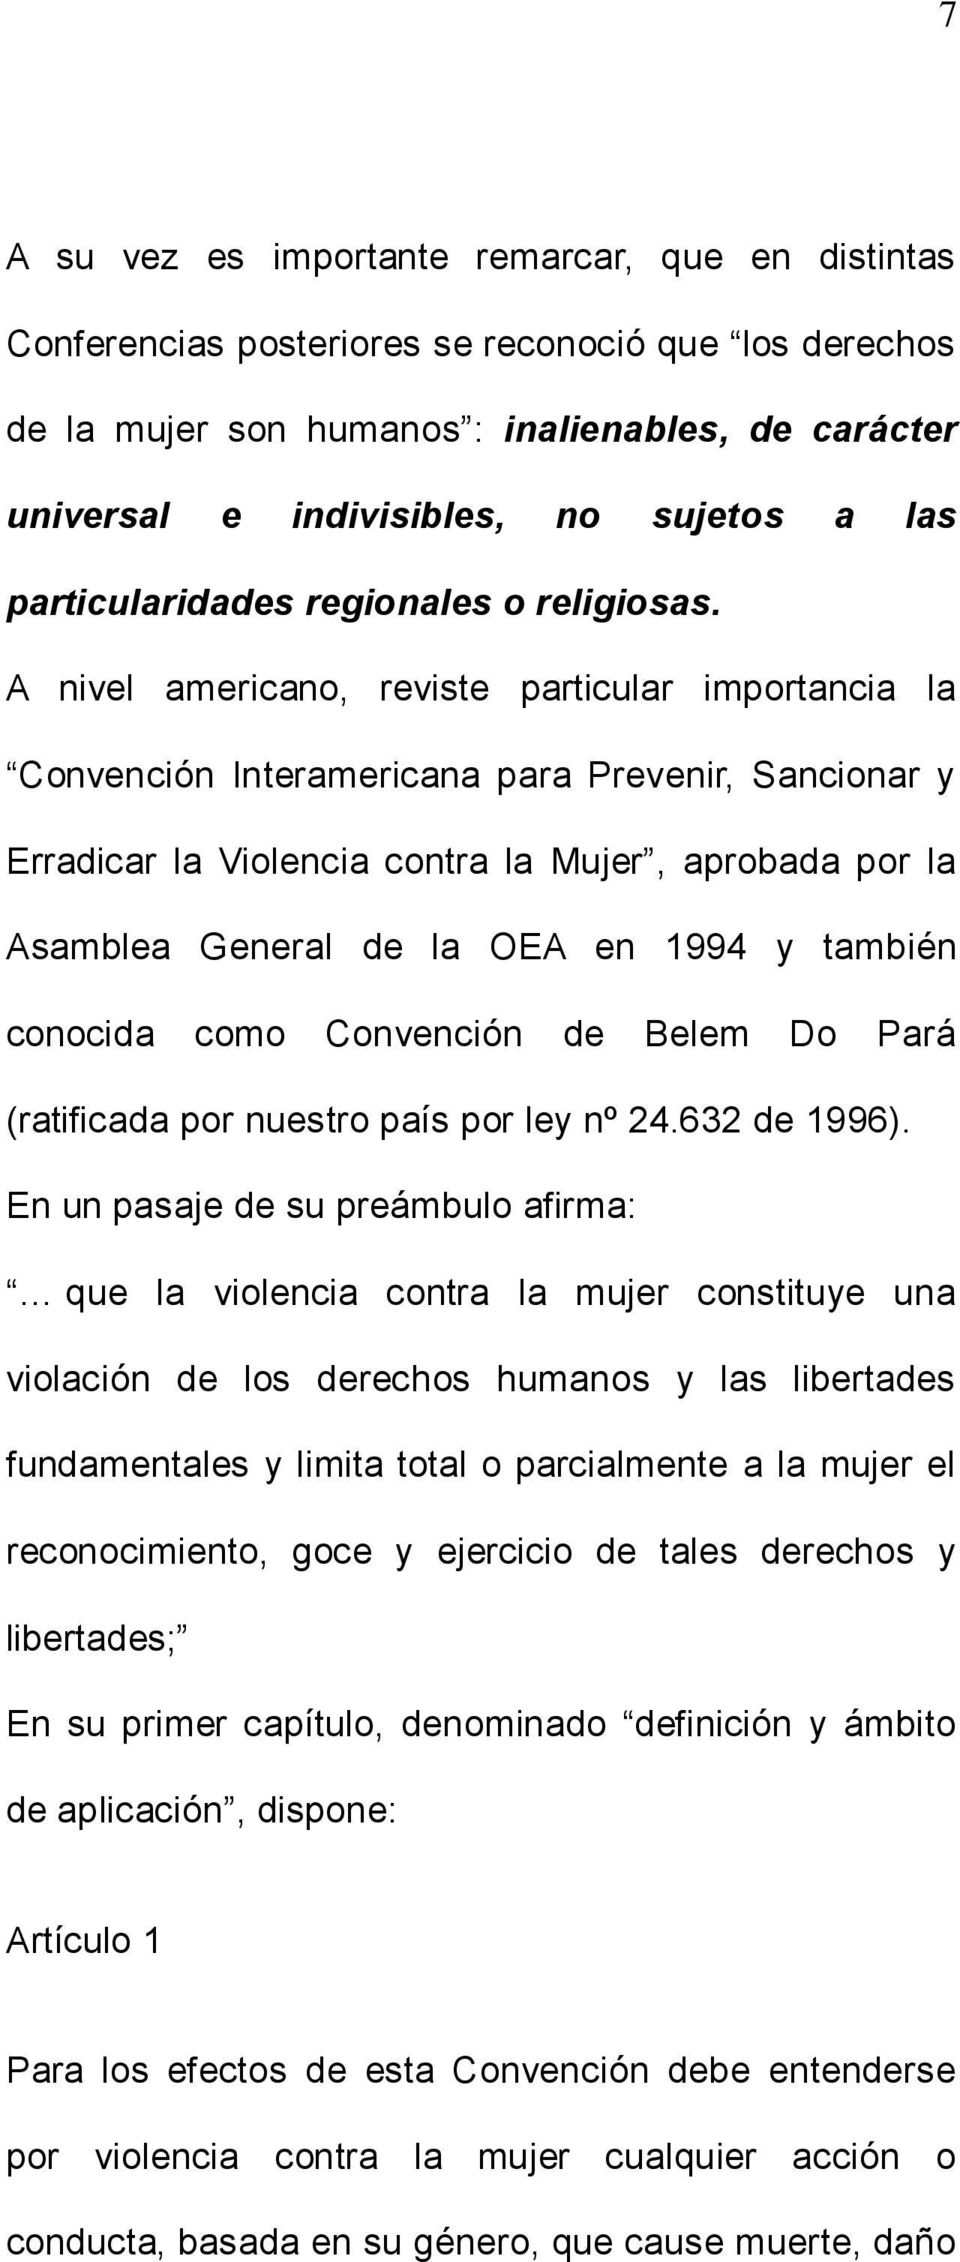 A nivel americano, reviste particular importancia la Convención Interamericana para Prevenir, Sancionar y Erradicar la Violencia contra la Mujer, aprobada por la Asamblea General de la OEA en 1994 y